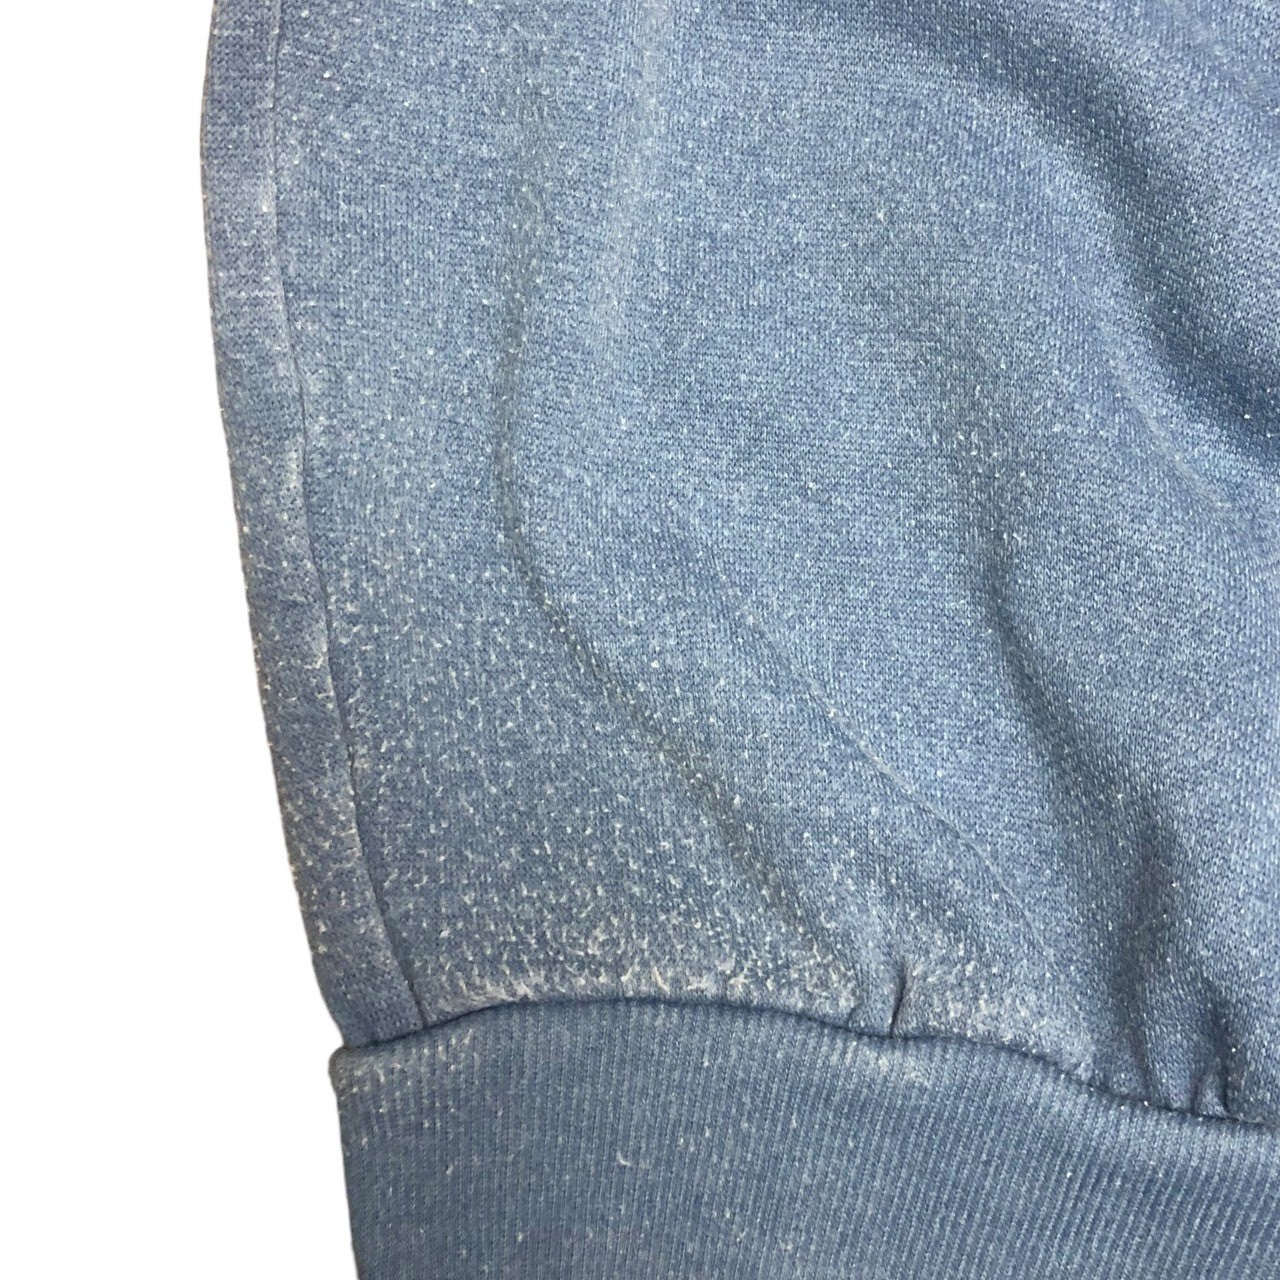 adidas(アディダス) 80's 1928 IX olympiade Amsterdam sweatshirt  ロサンゼルスオリンピック アムステルダム スウェットシャツ 80年代 ヴィンテージ SIZE表記消え(XL程度) ブルー×レッド 袖切りっぱなしカスタム品